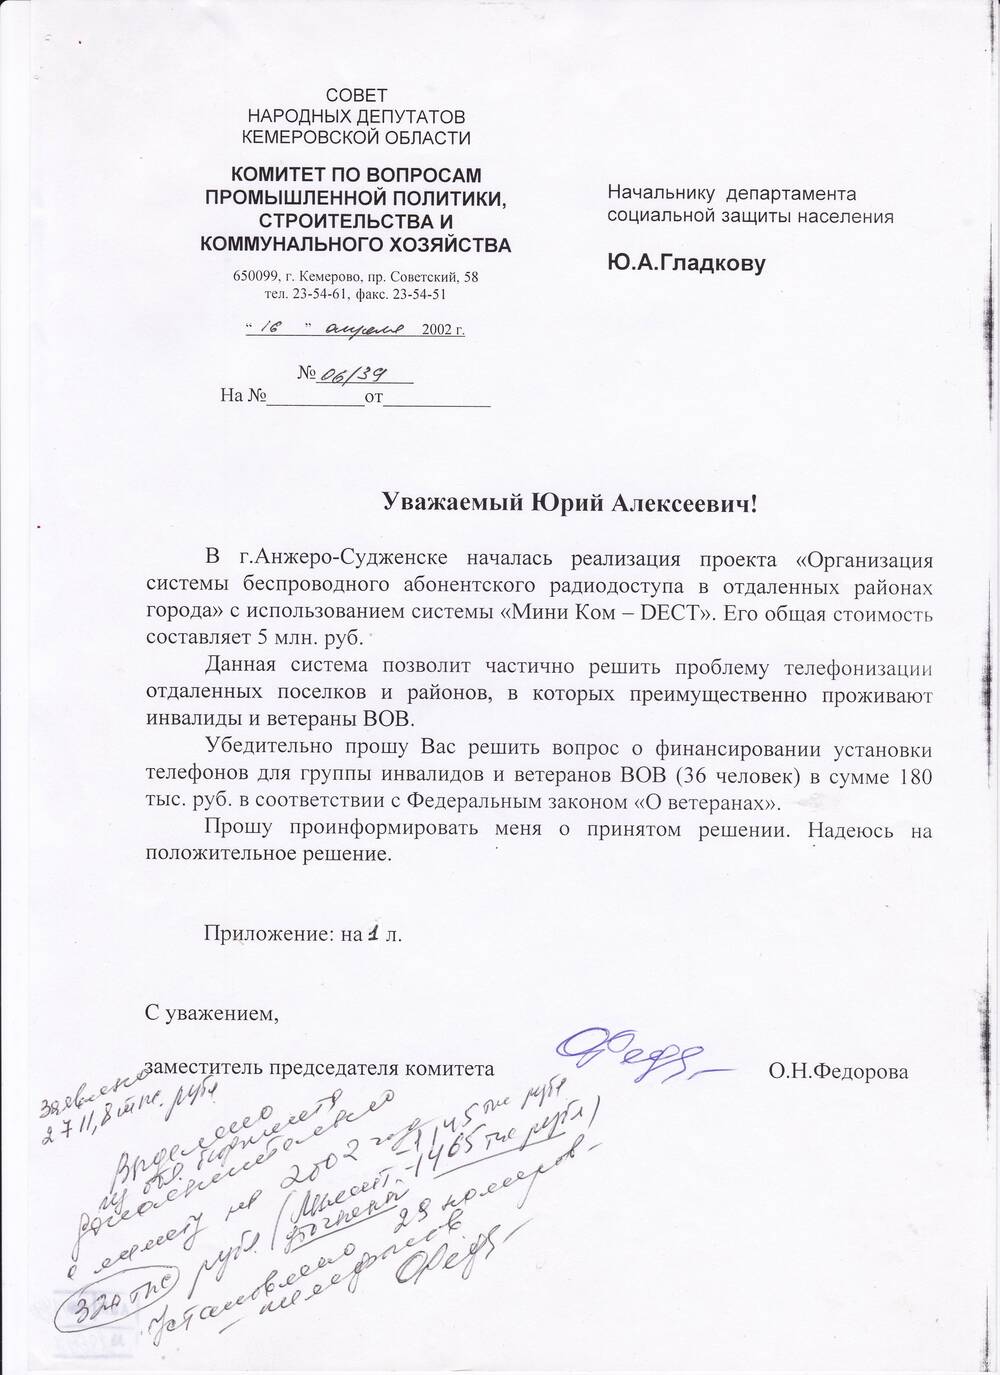 Письмо начальнику департамента соцзащиты Ю.А. Гладкову от 16.04.2002